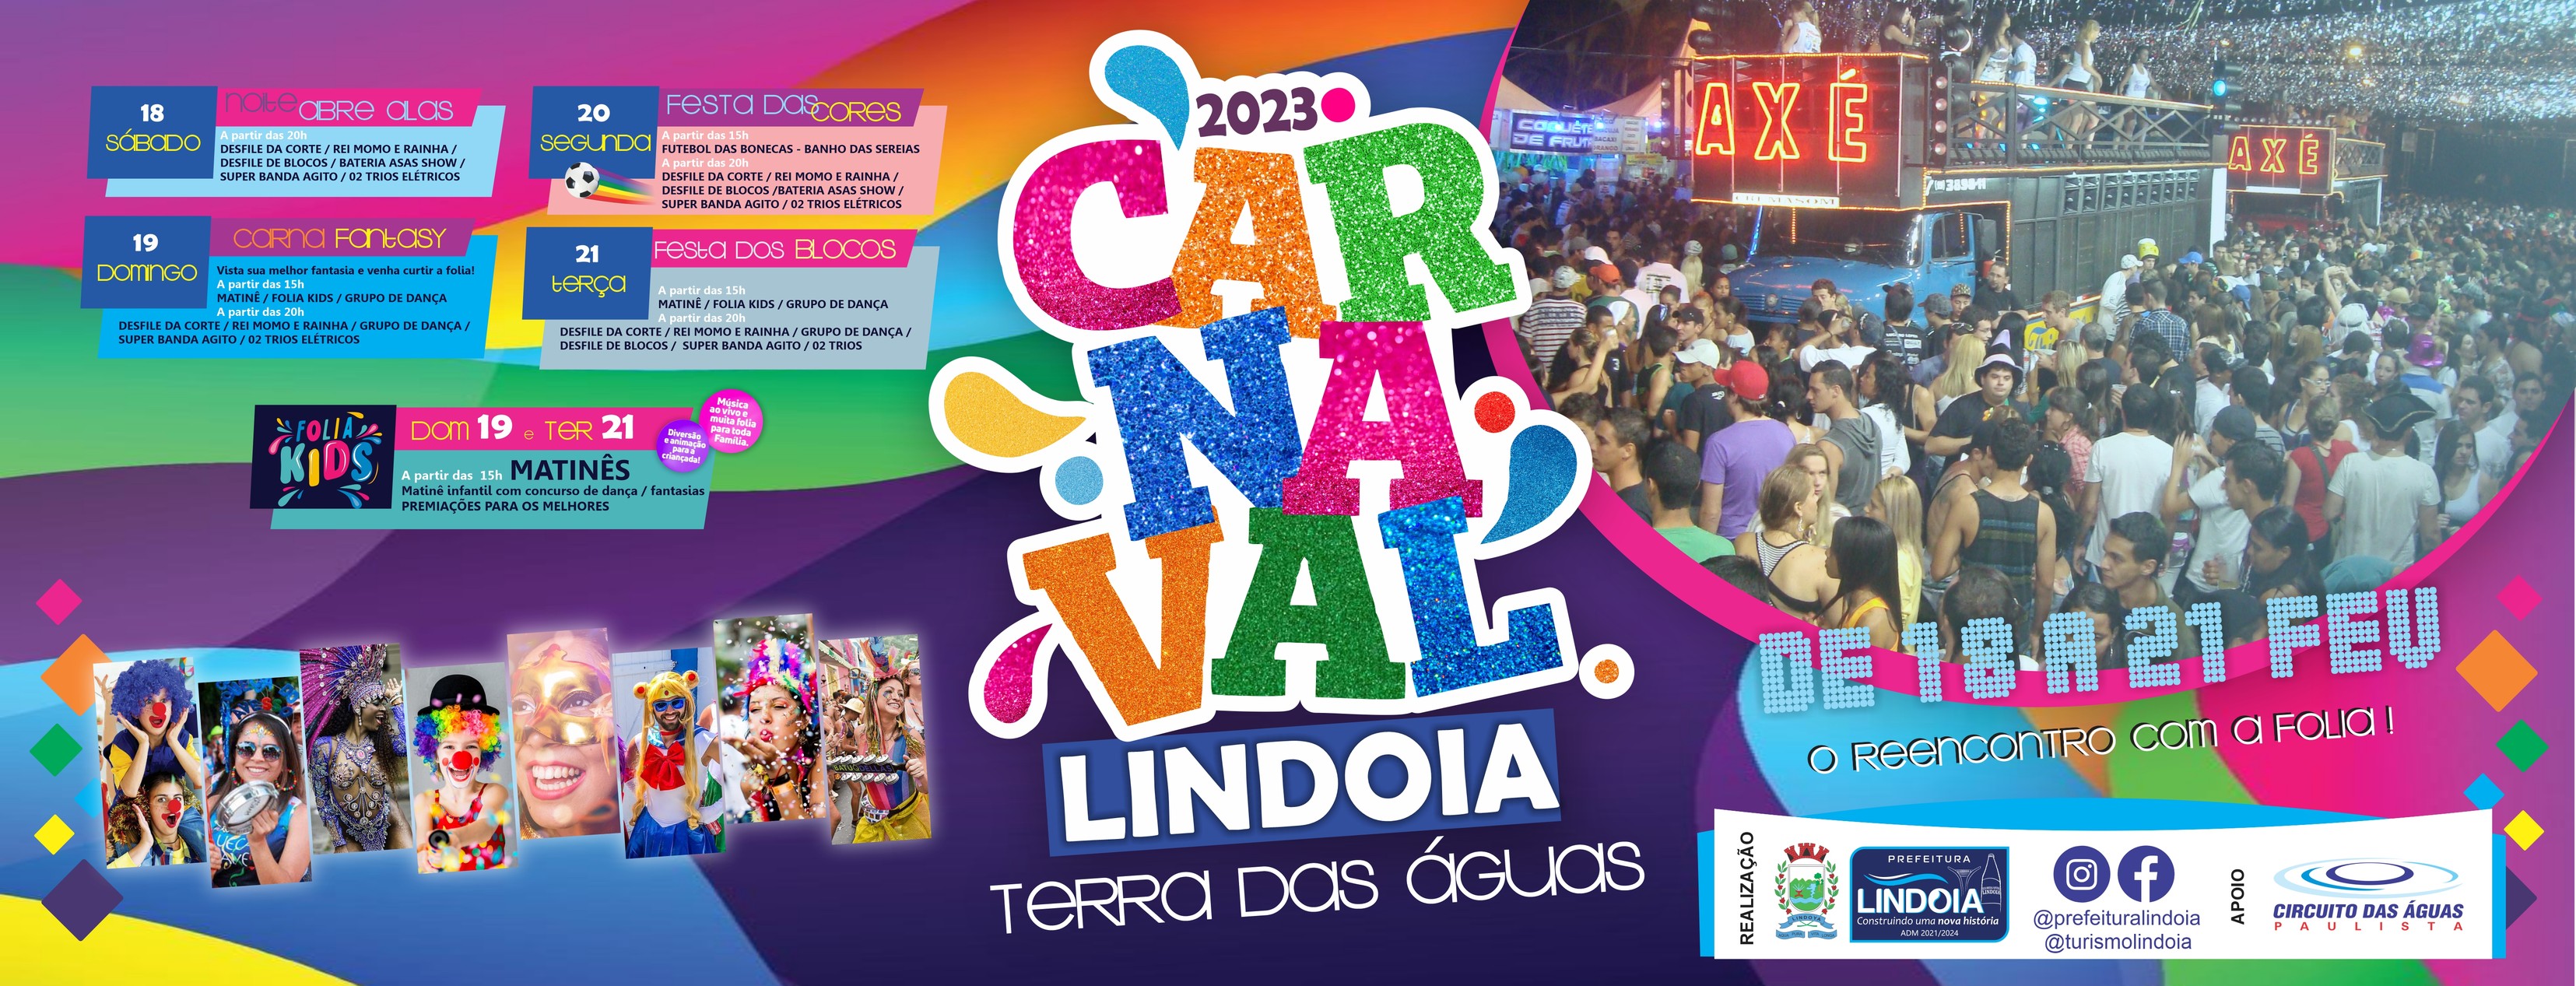 Lindoia confirma Carnaval na Avenida 31 de março